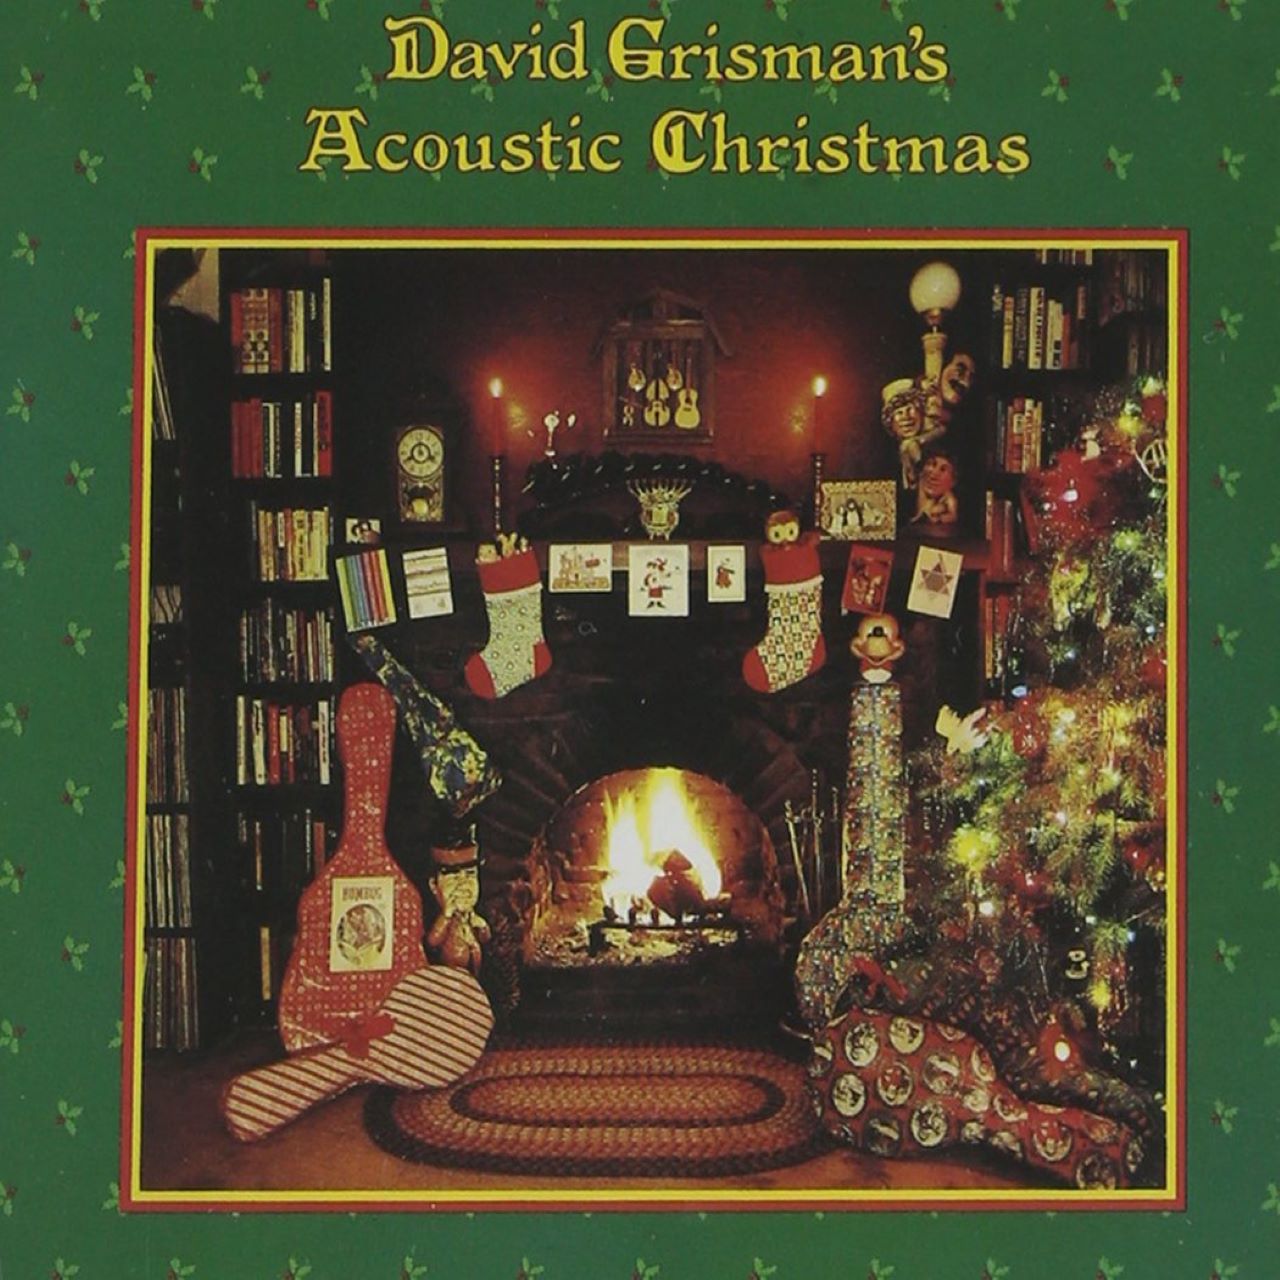 David Grisman - Acoustic Christmas cover album